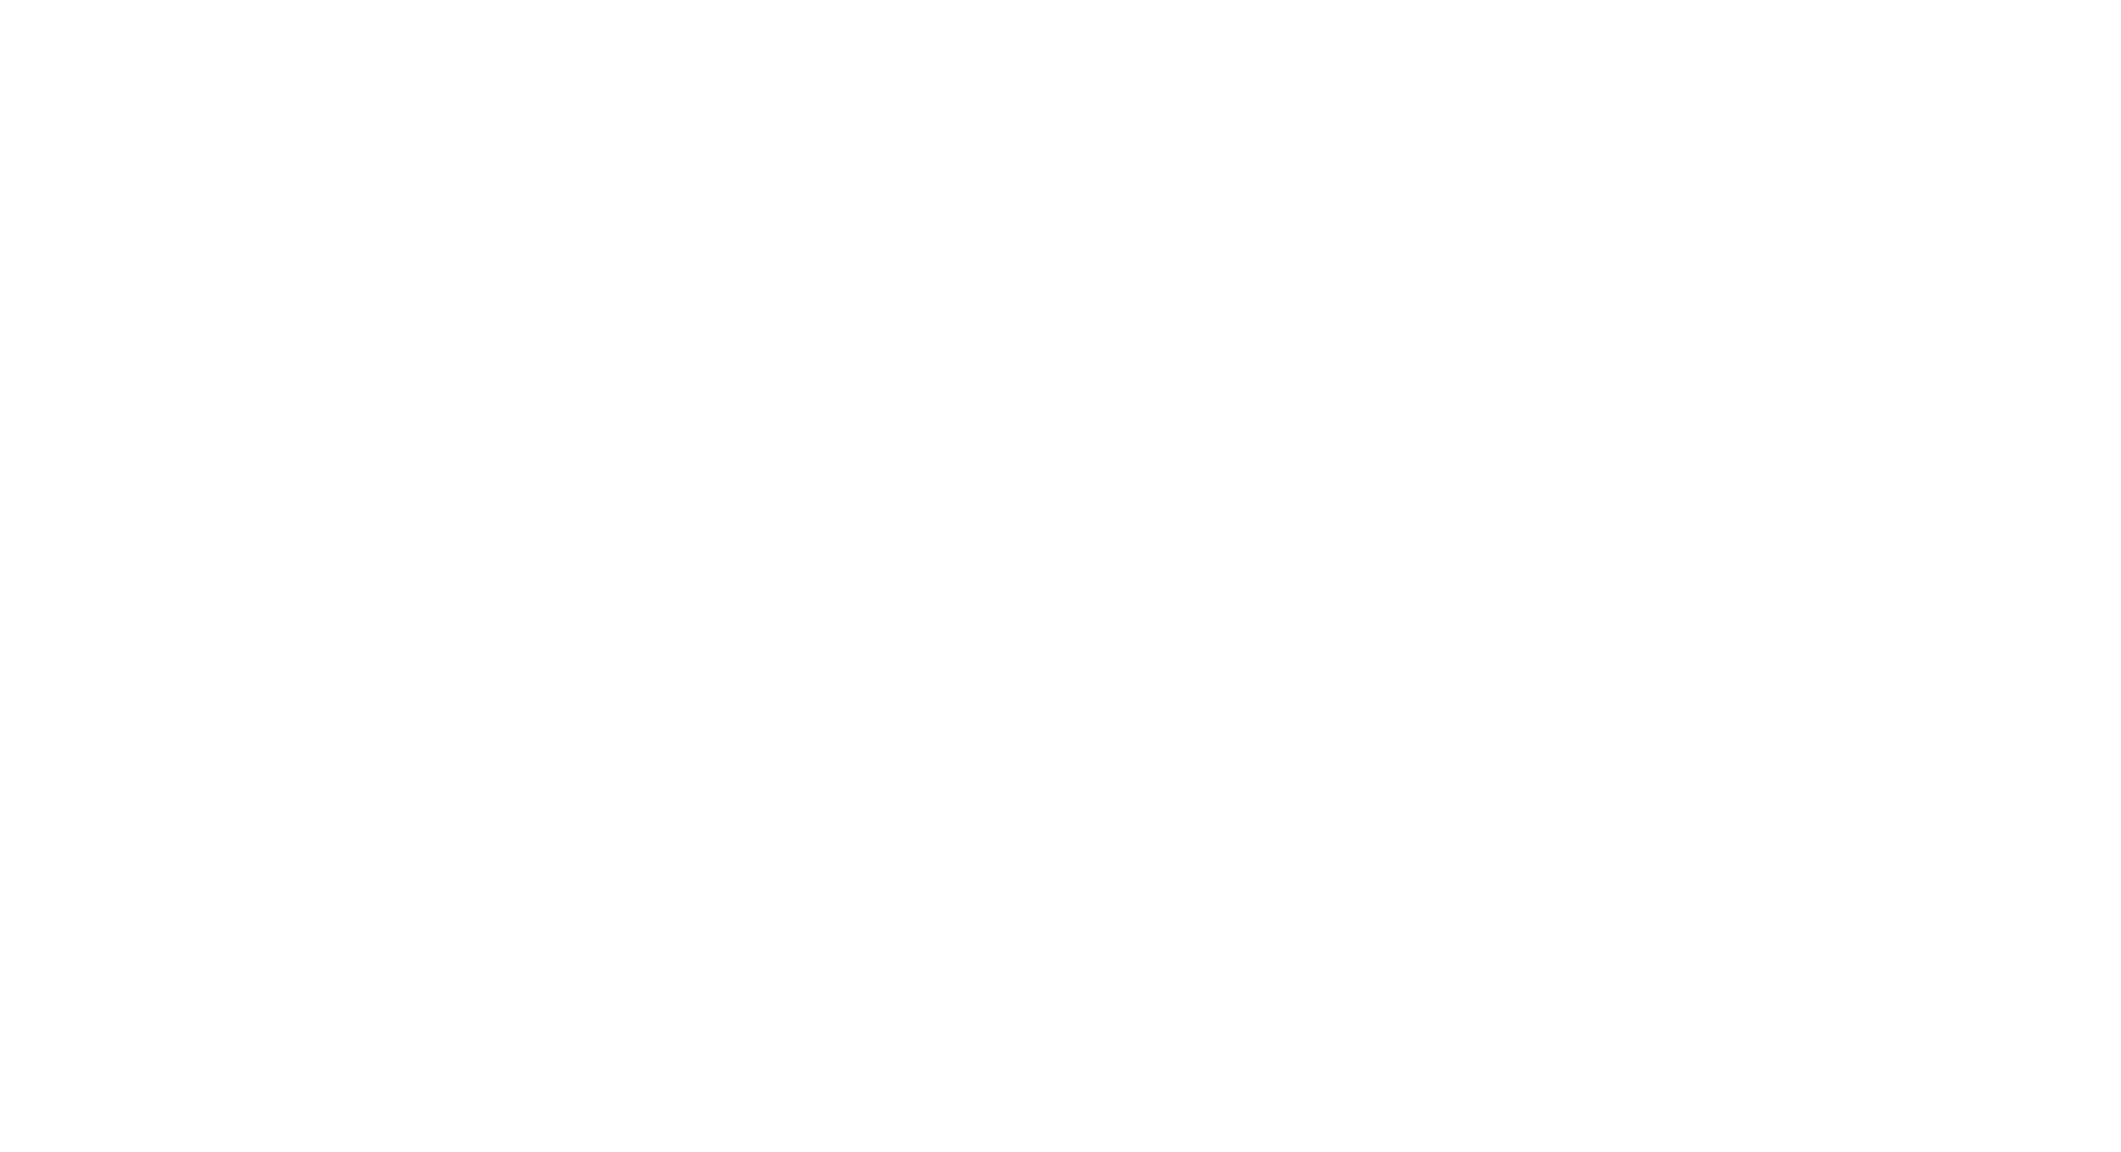 Energentik logos